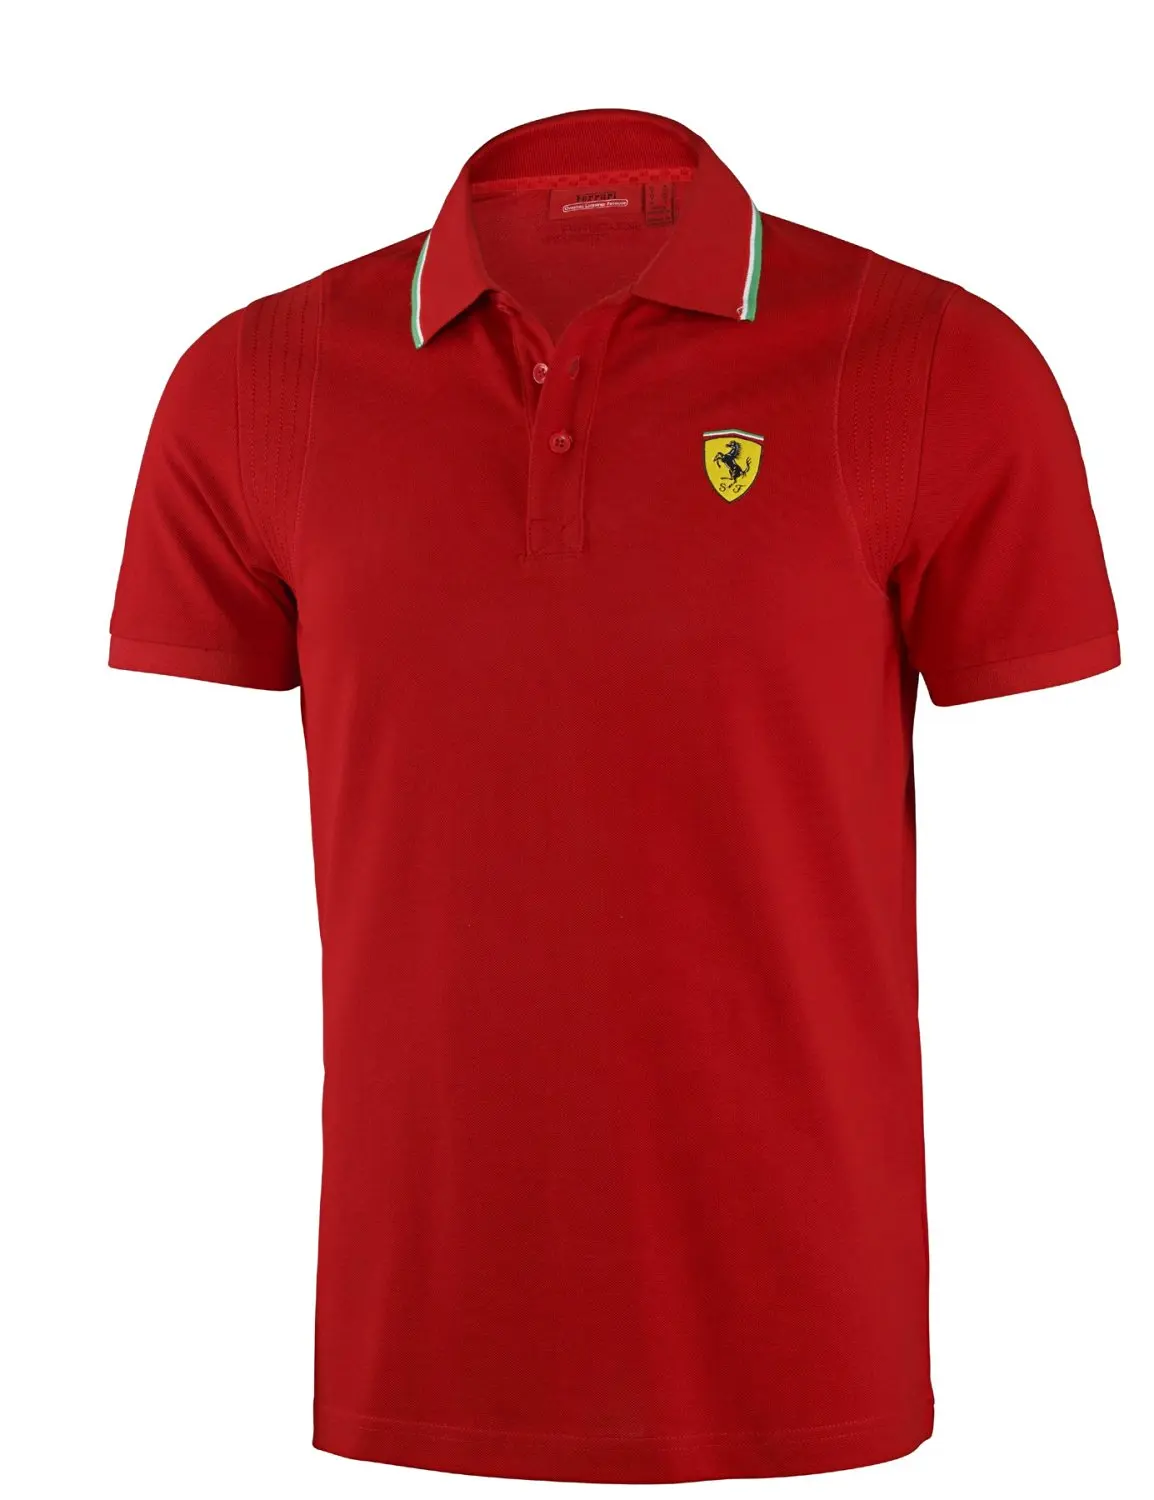 Cheap Red Ferrari Shirt, find Red Ferrari Shirt deals on line at ...